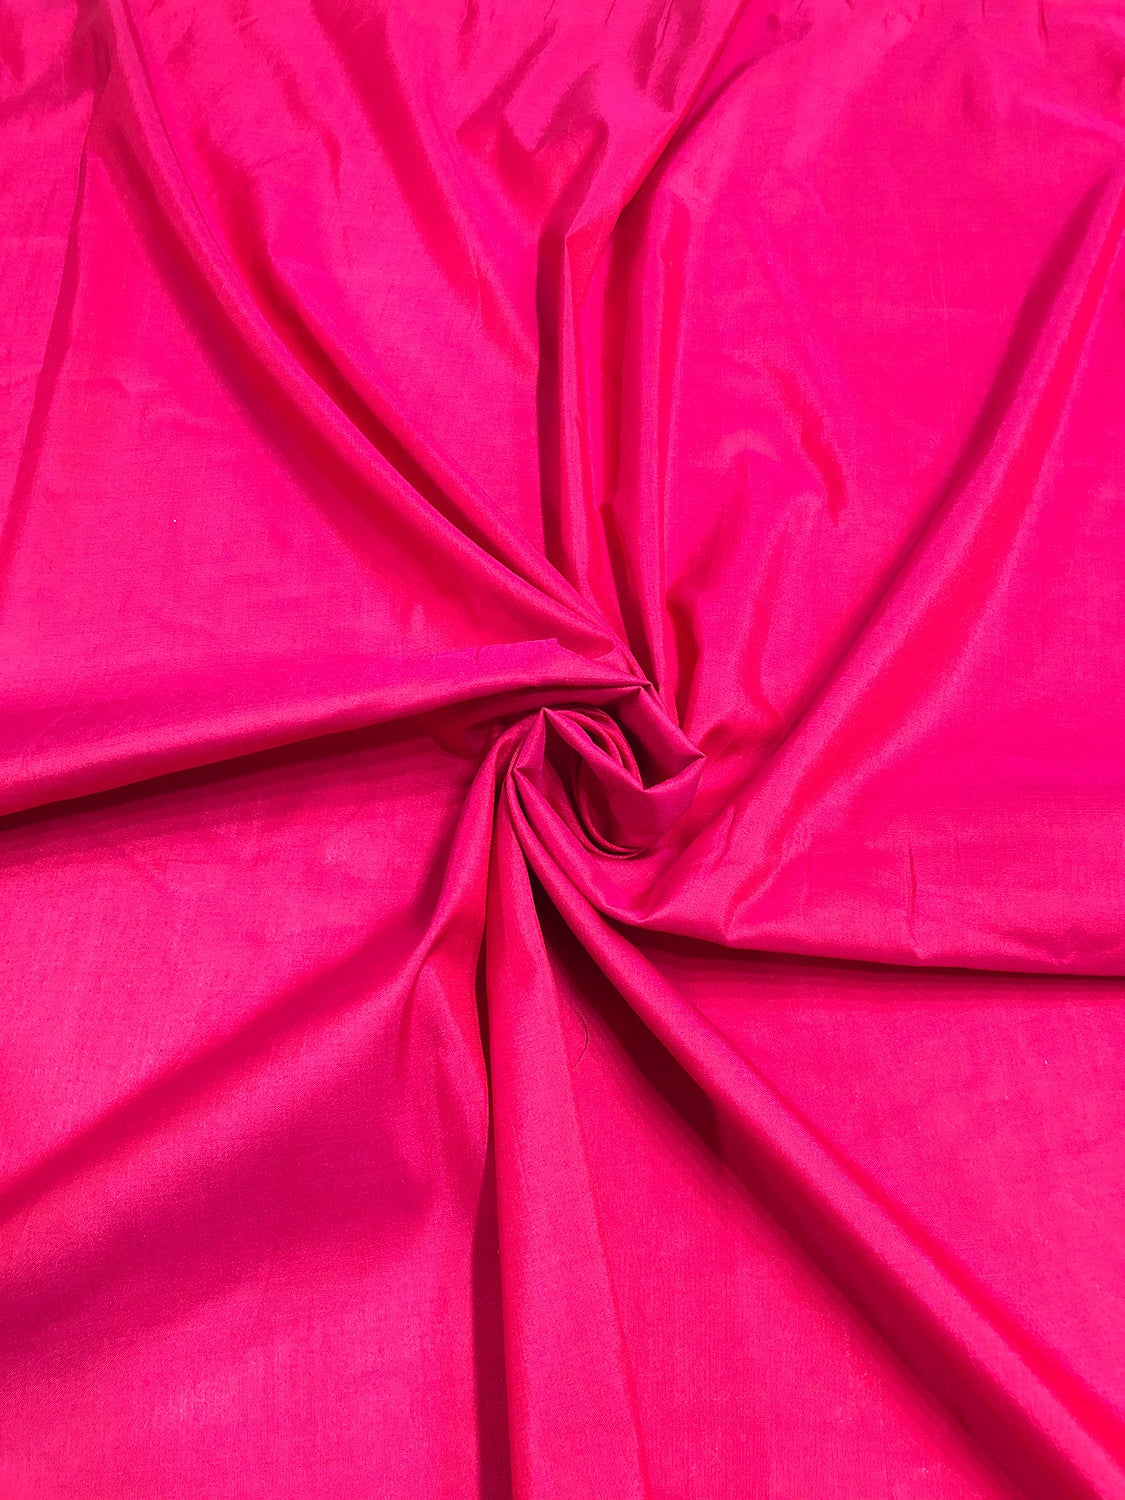 Iridescent Rose Red Spun Silk Fabric